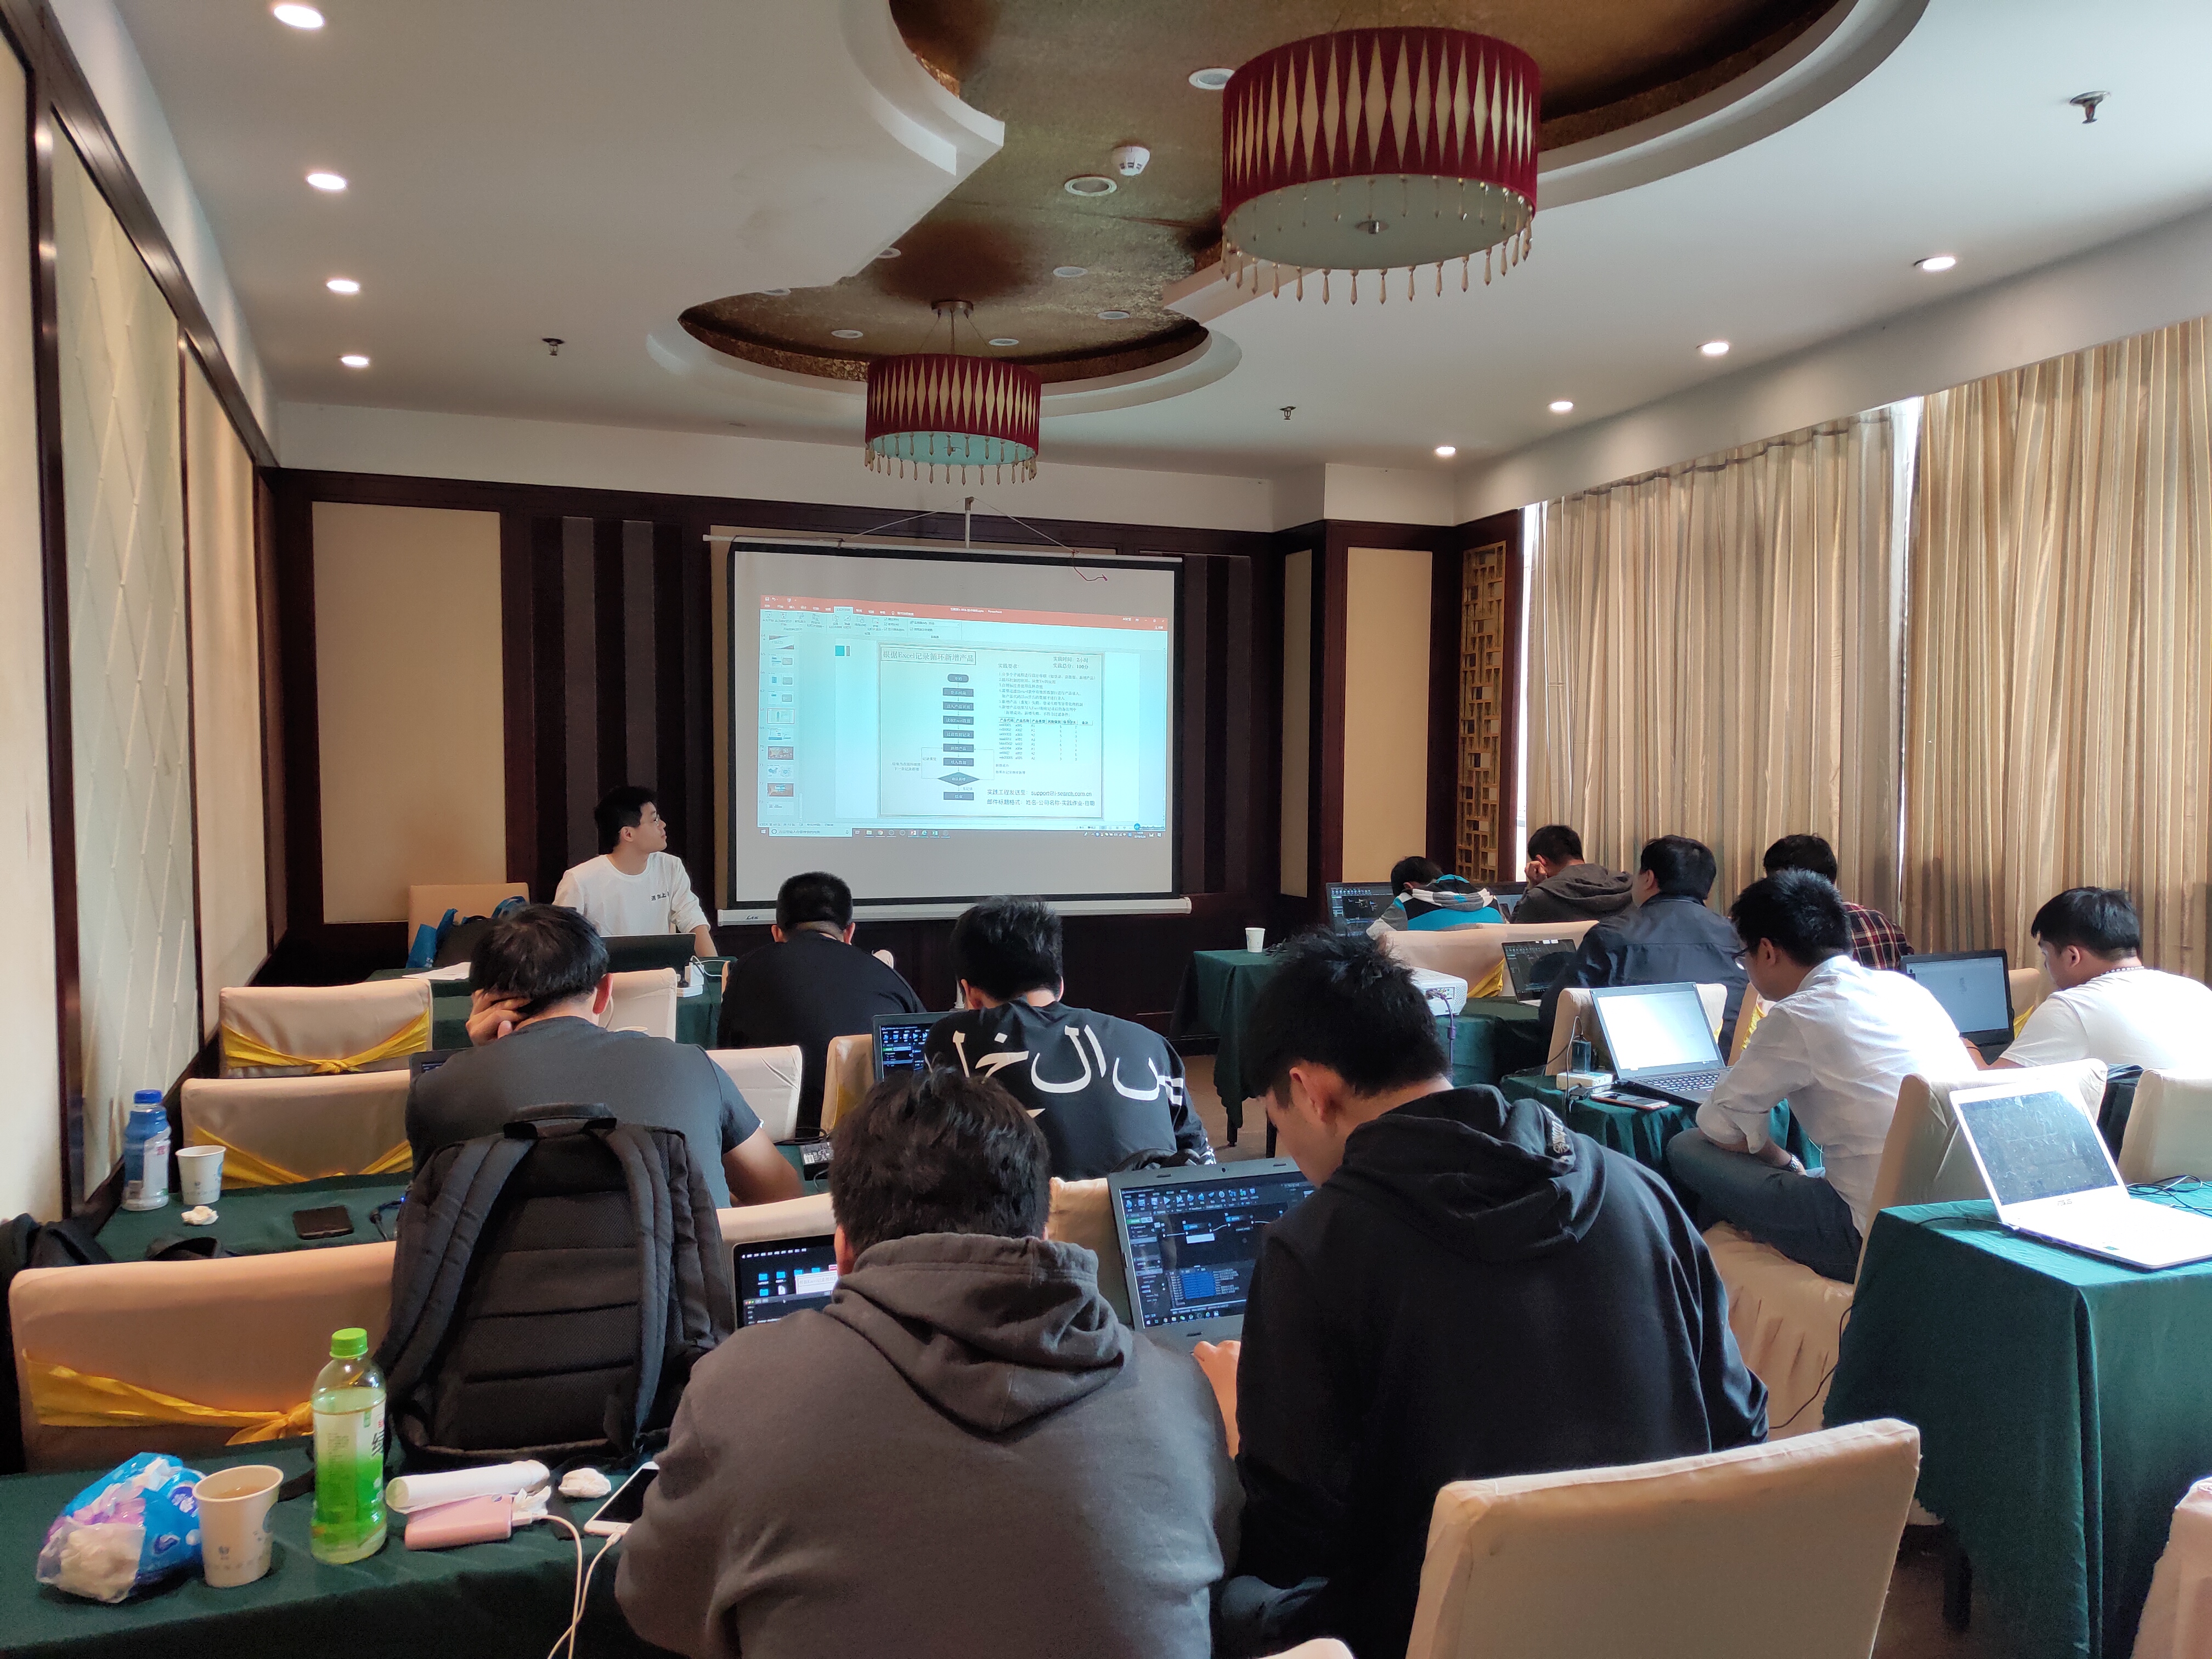 iS-RPA 技术认证培训 - 南京 20190423 班 - 培训完成